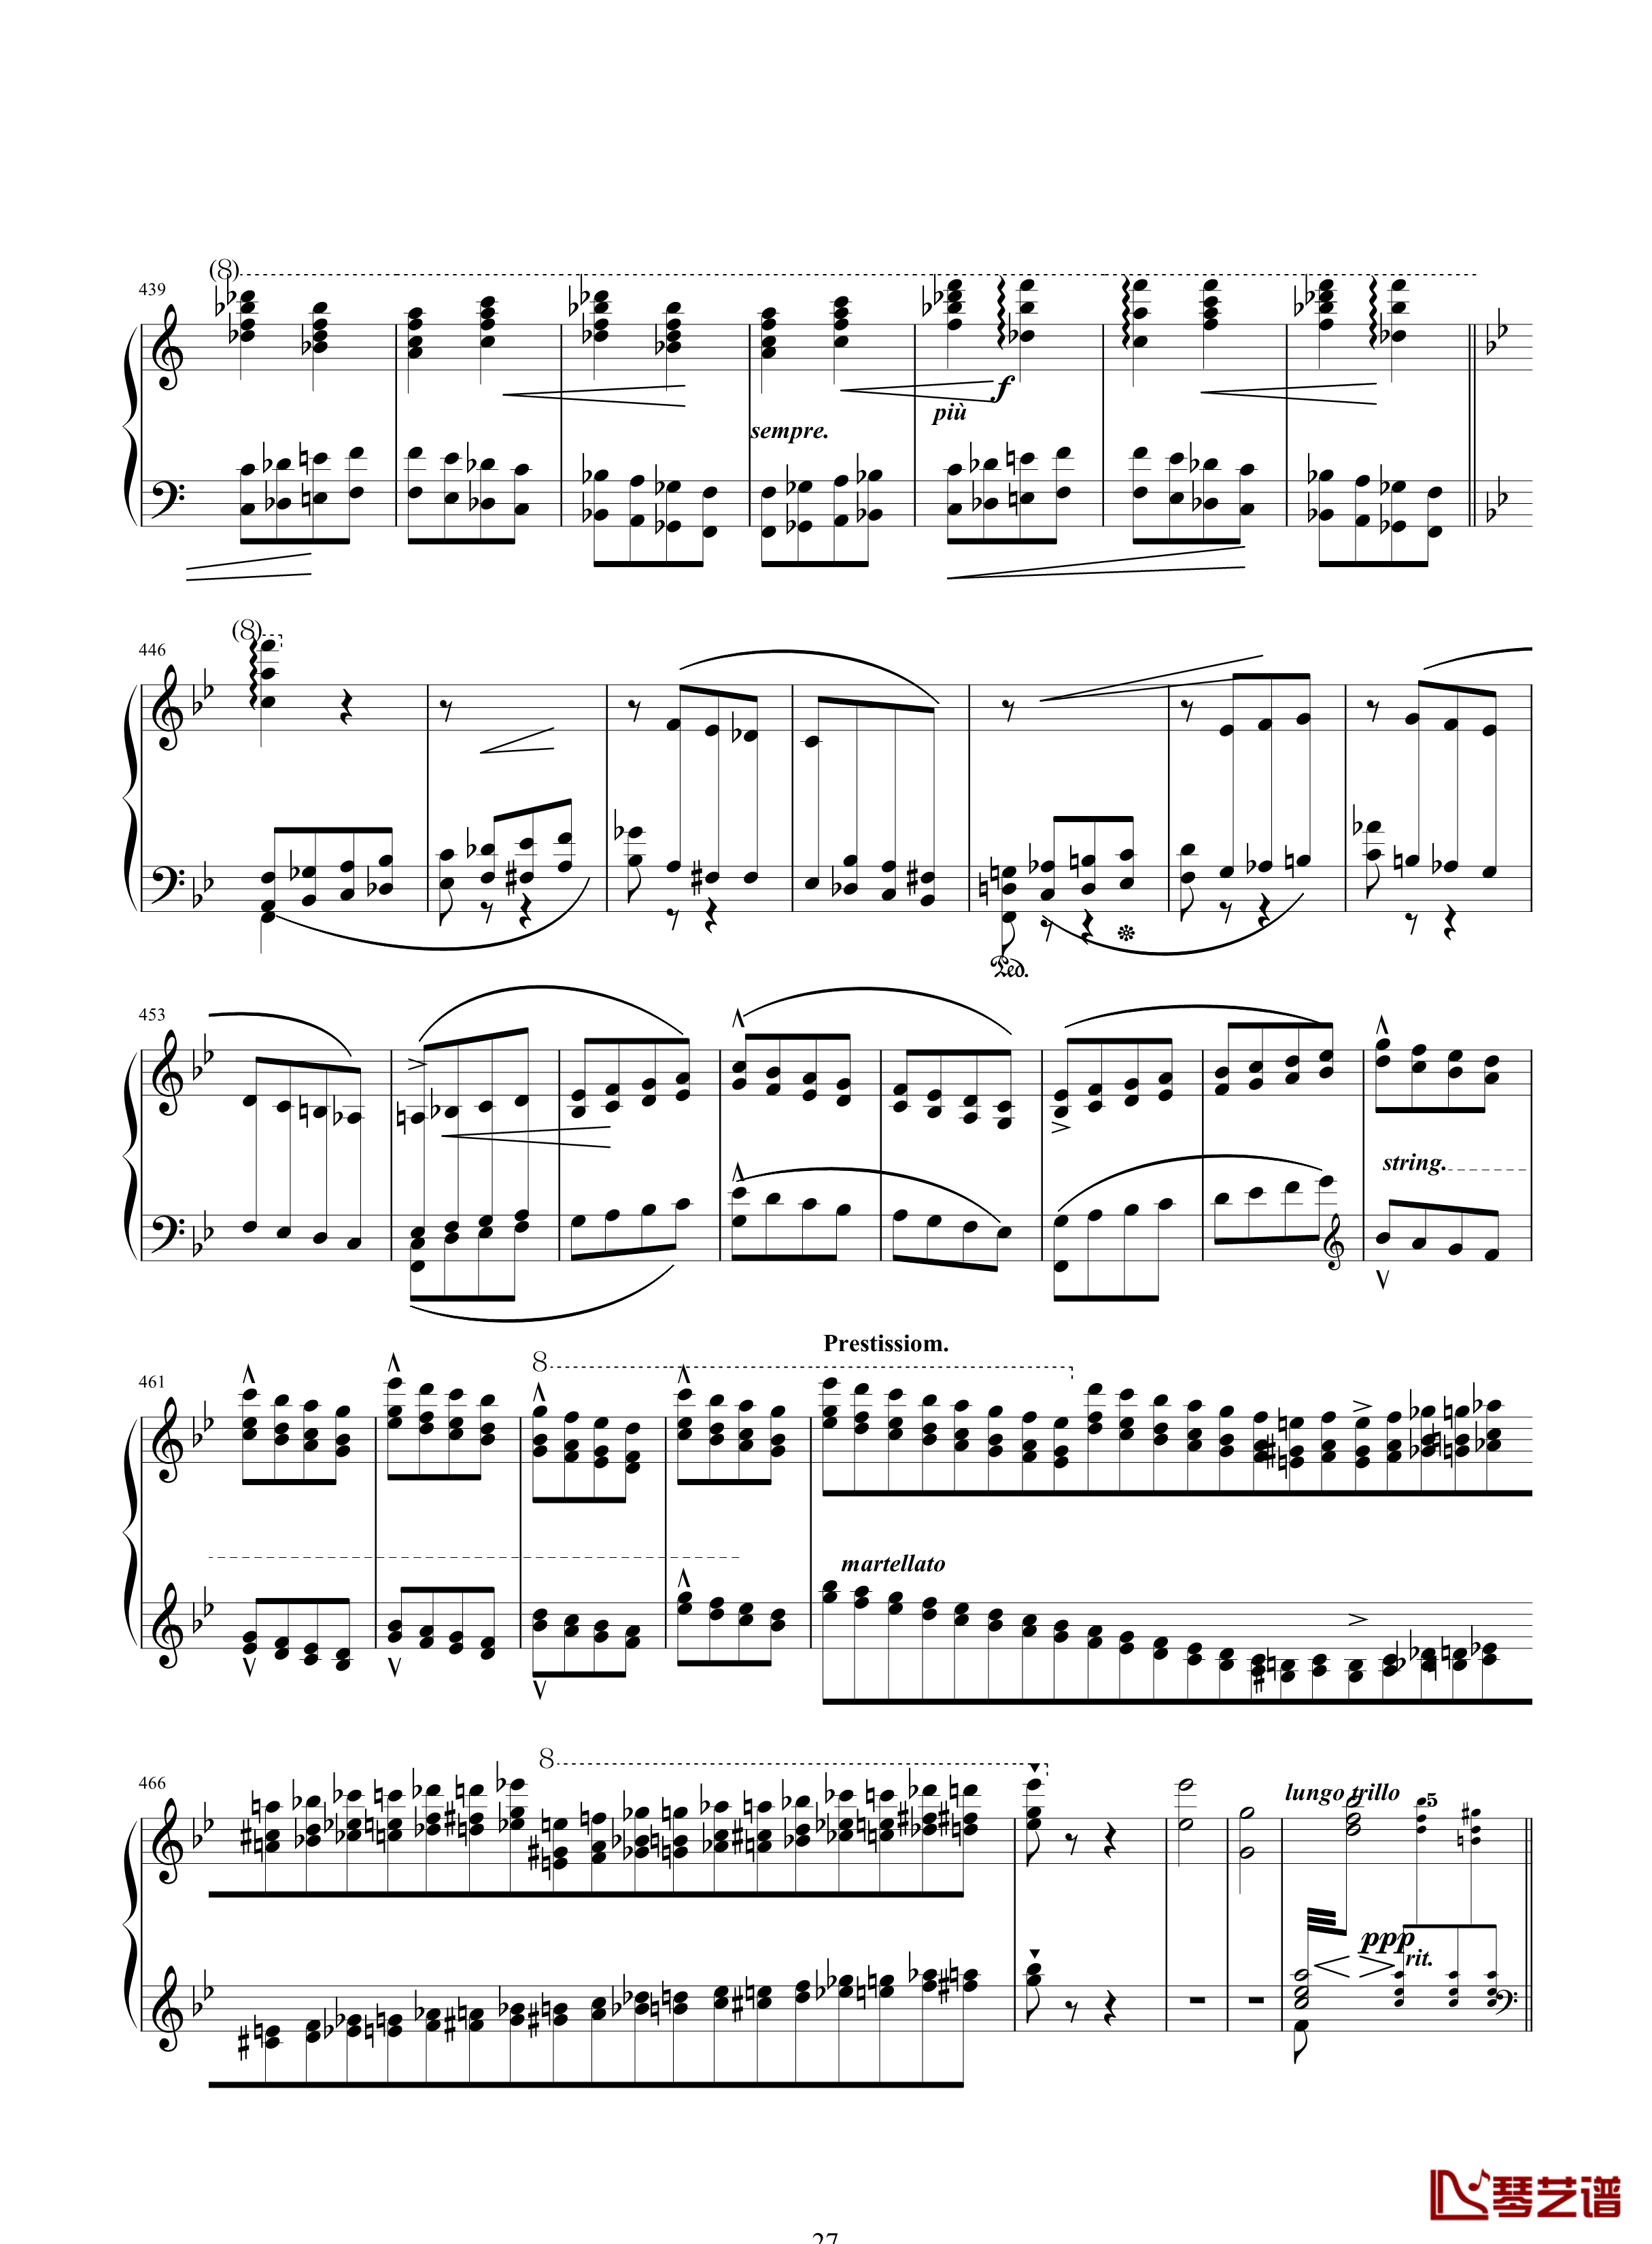 唐璜的回忆钢琴谱-34页全谱-李斯特27